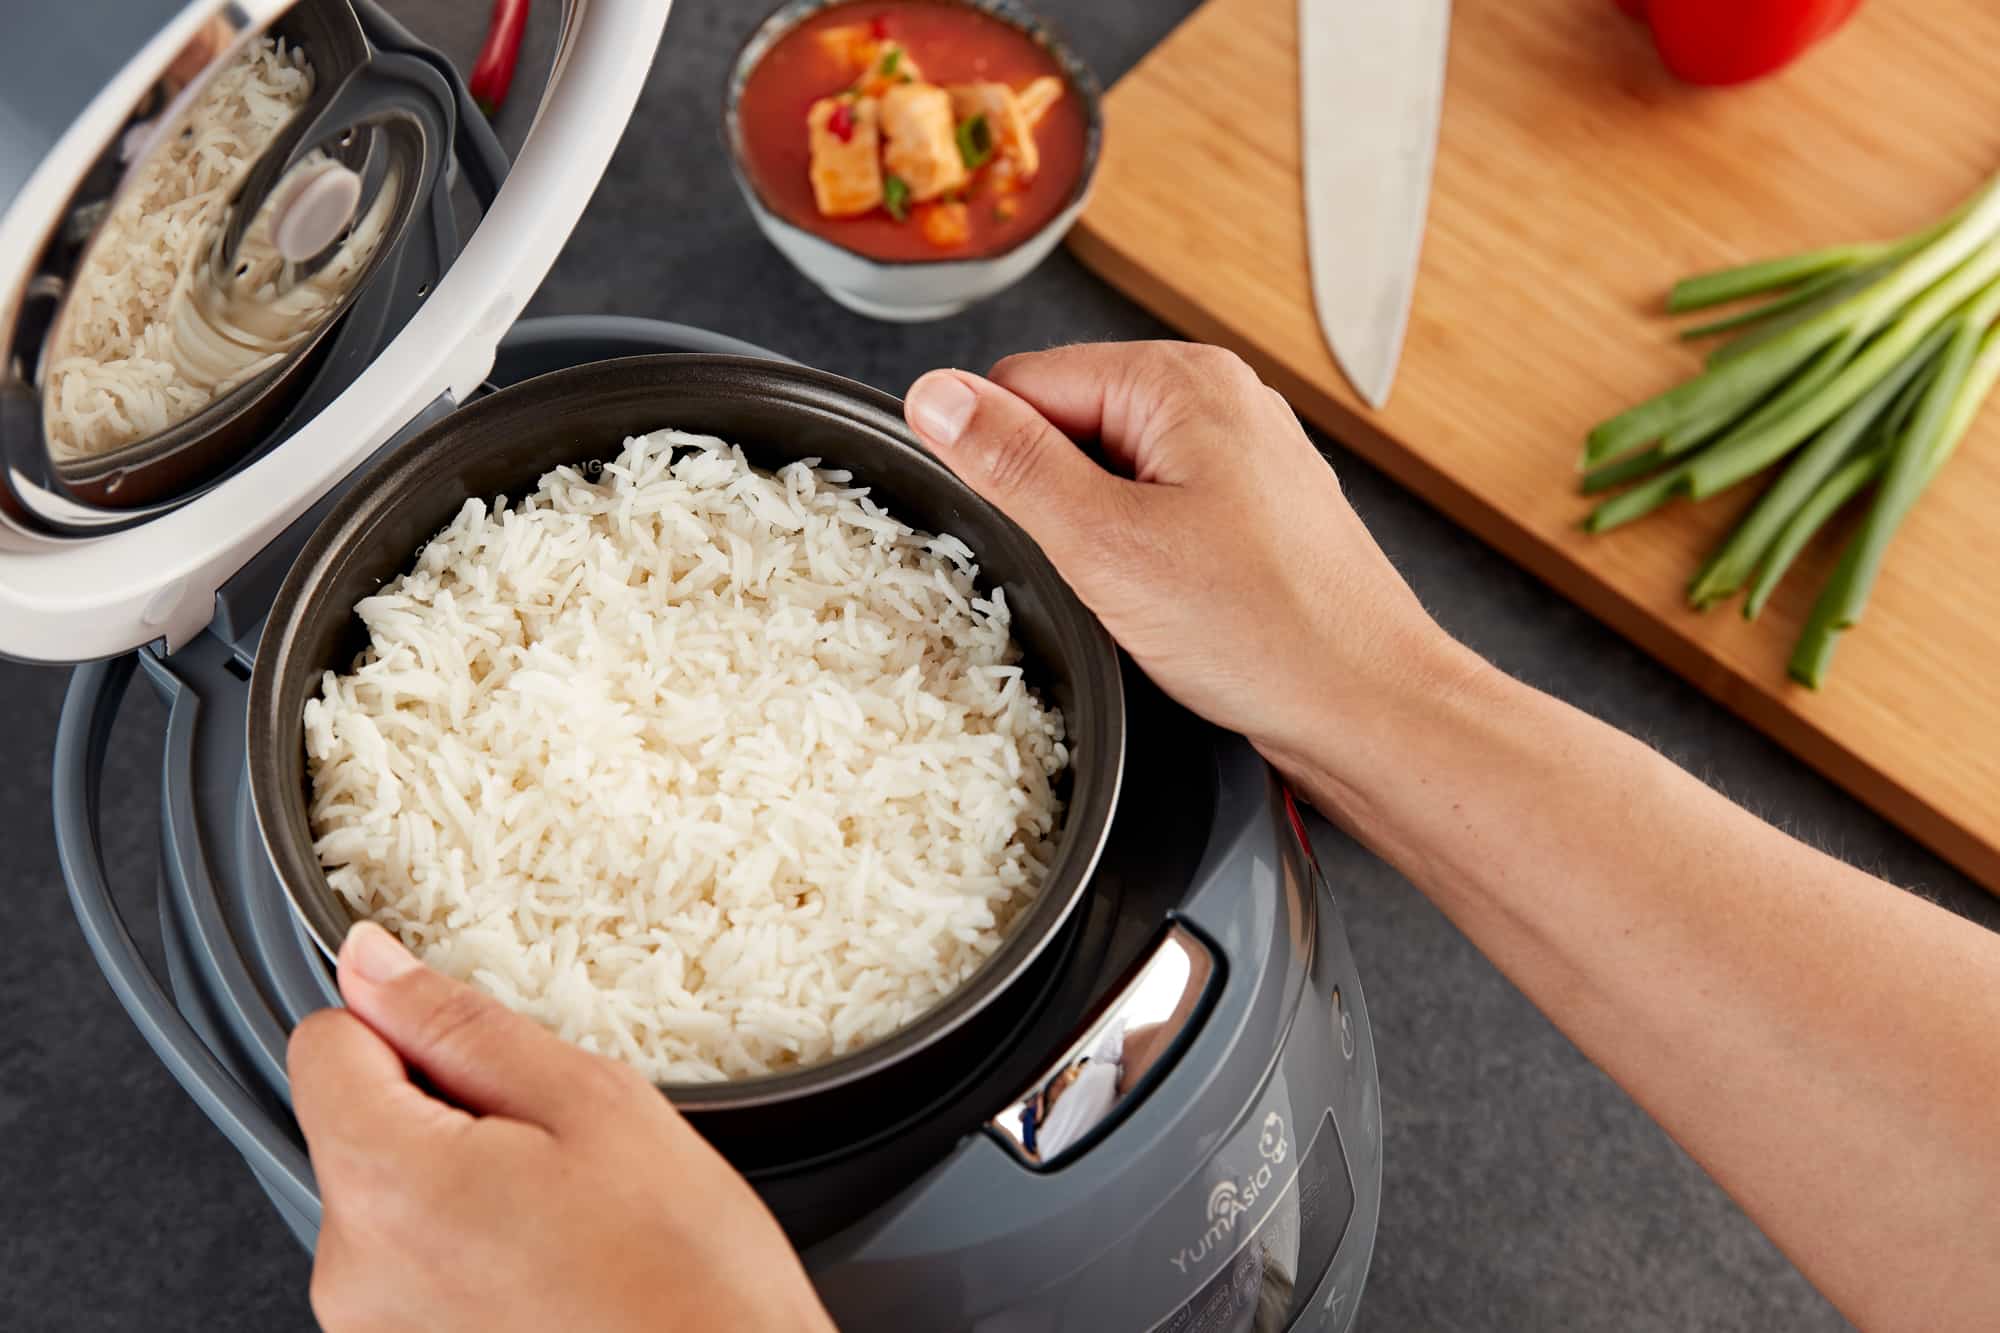 Test, avis Yum Asia Sakura : le multicuiseur riz et multifonction avec IA -  Comparatif des meilleures friteuses et cuissons sans huile